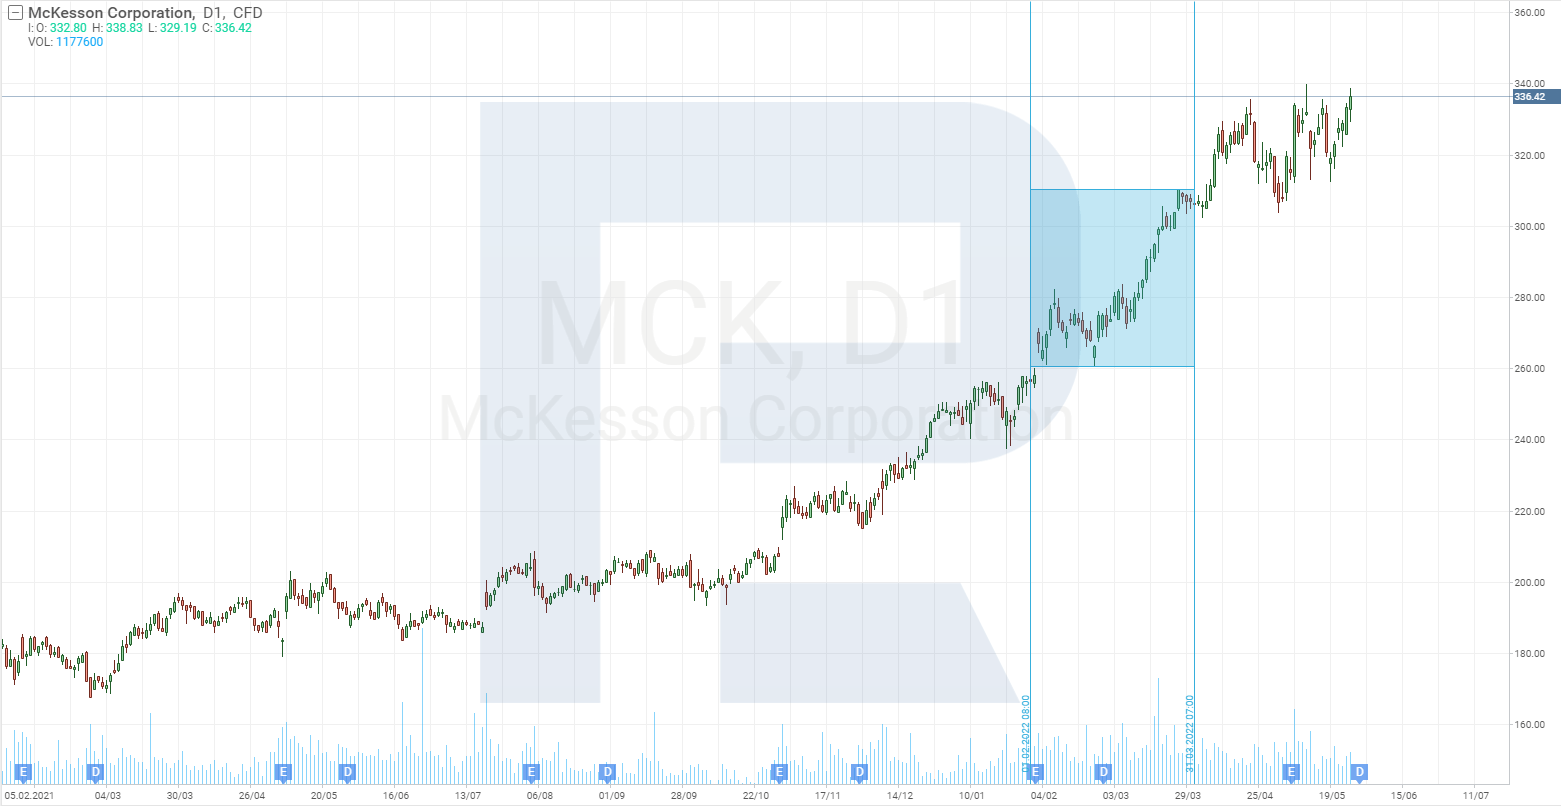 Aktienkurschart der McKesson Corporation